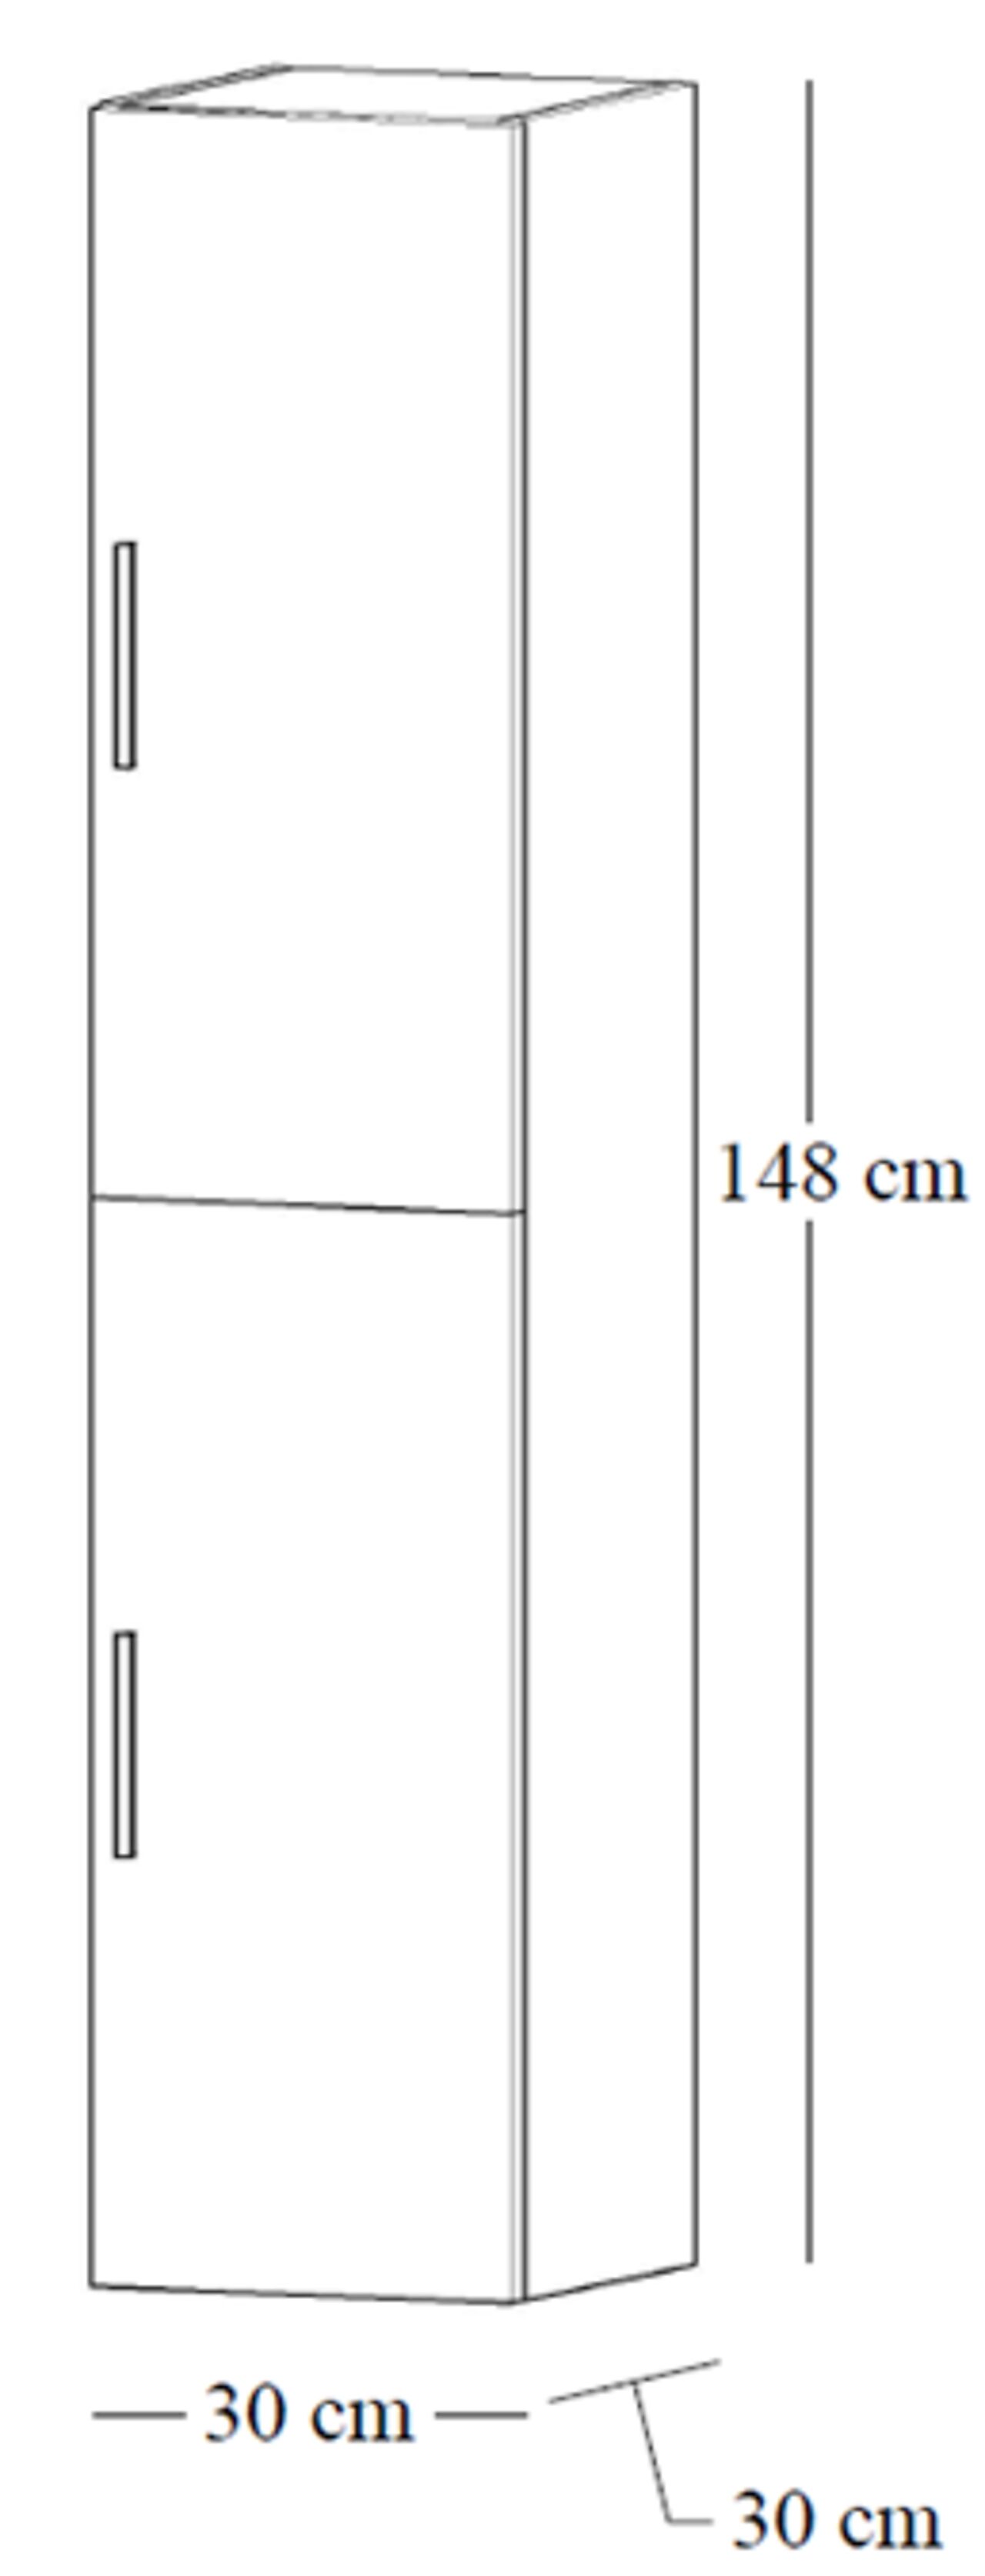 Alterna Alterna Malin 30 cm høyskap med 2 dører sand matt 1